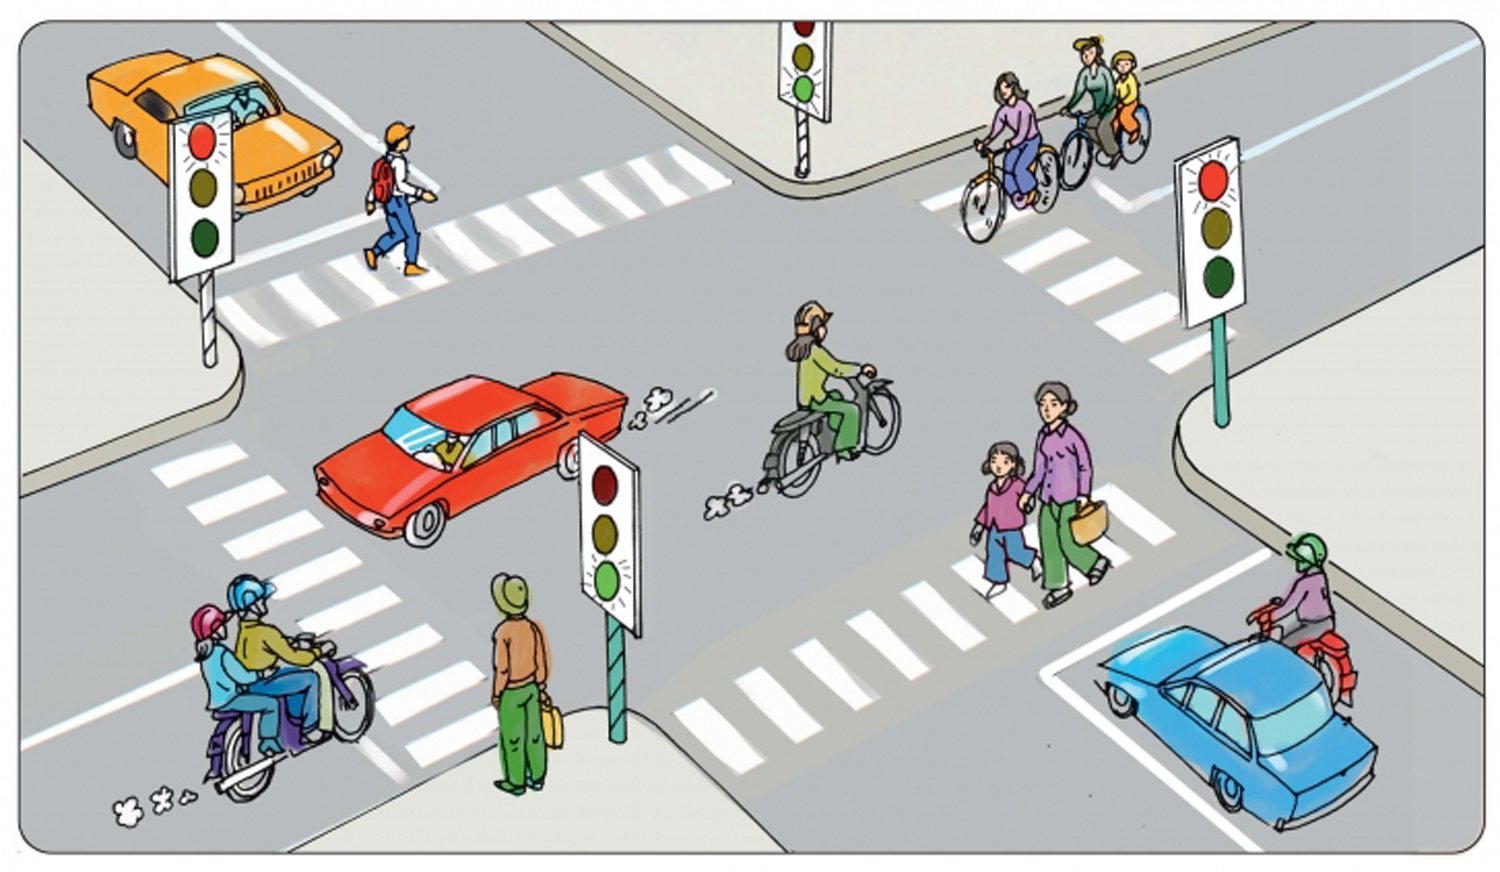 Luật Trật tự giao thông đã giúp đảm bảo an toàn cho người dân trên đường phố. Hình ảnh khiến bạn nhớ lại sự nghiêm túc và áp dụng chặt chẽ của luật pháp, giúp tăng cường ý thức về an toàn giao thông của cộng đồng.